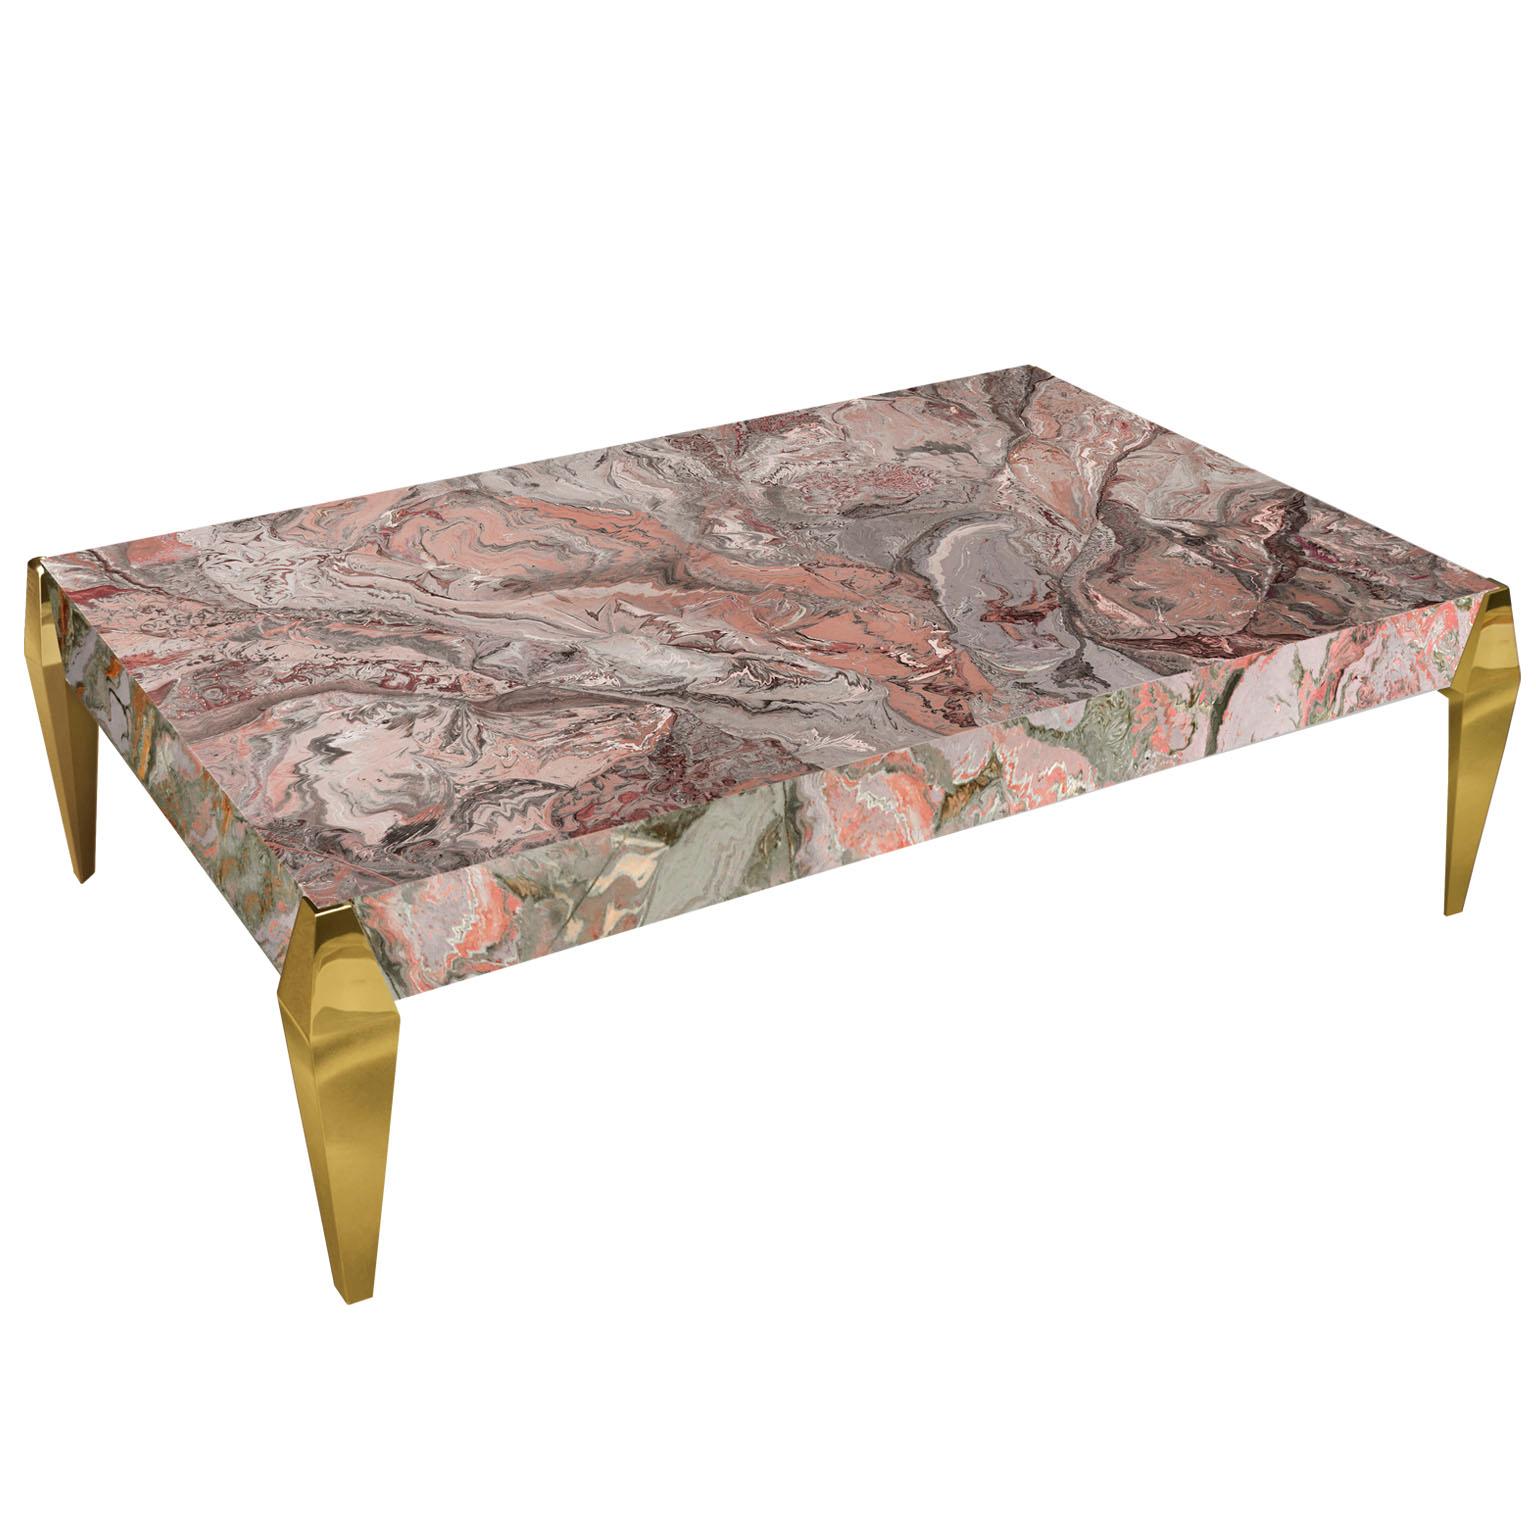 Modern Coffee Table Pink Grey Artistic Scagliola Decoration gold leaf feet